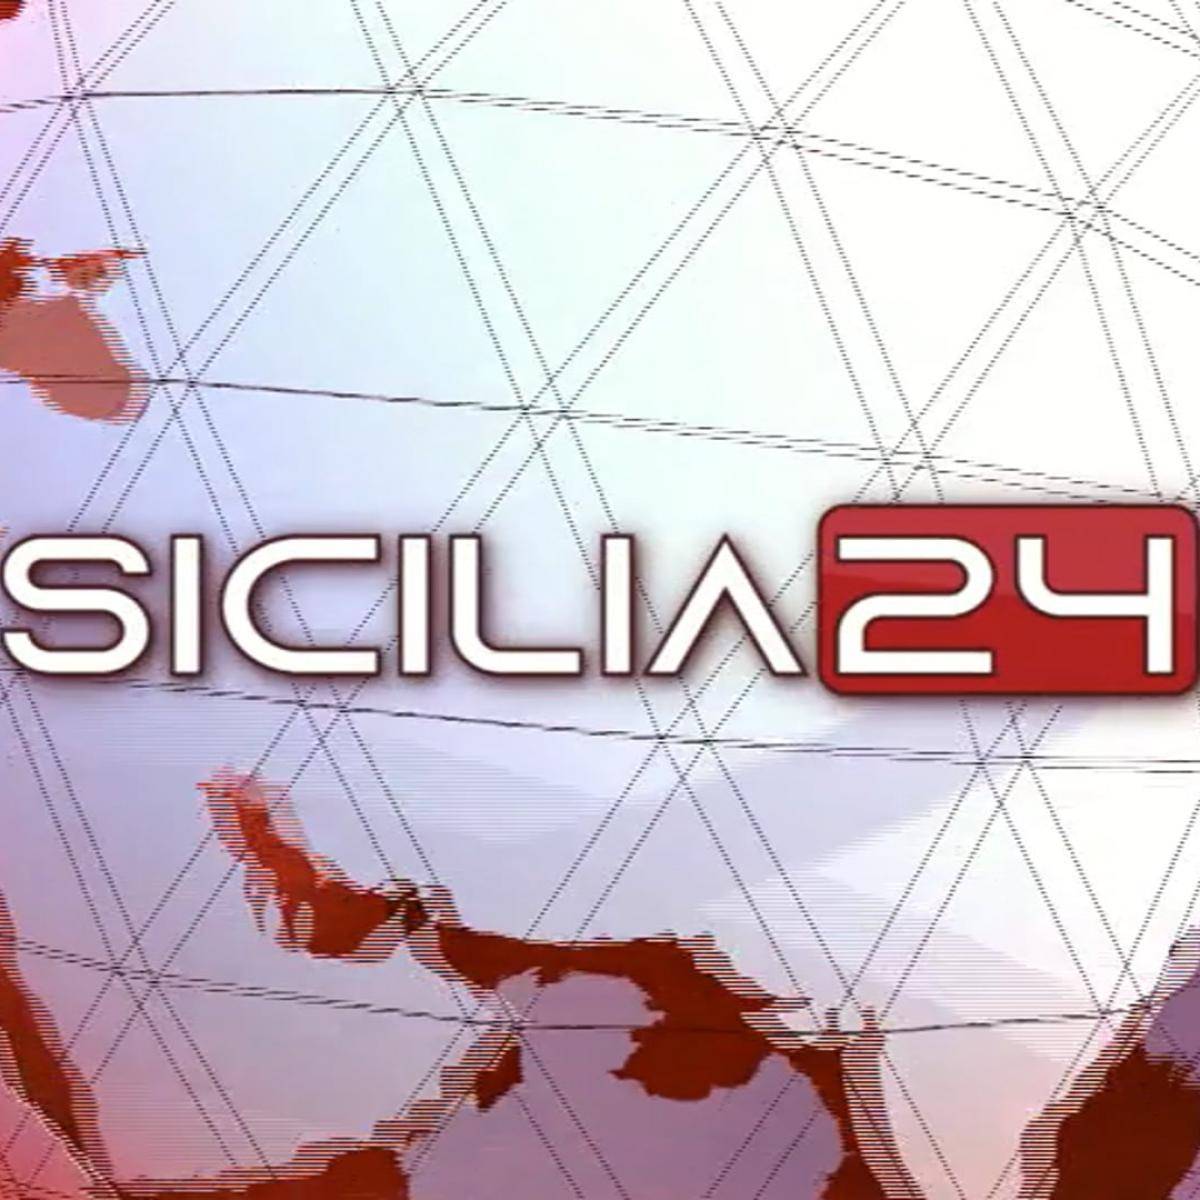 sicilia24-29-aprile-2022-ore-19-vimeo-thumbnail.jpg